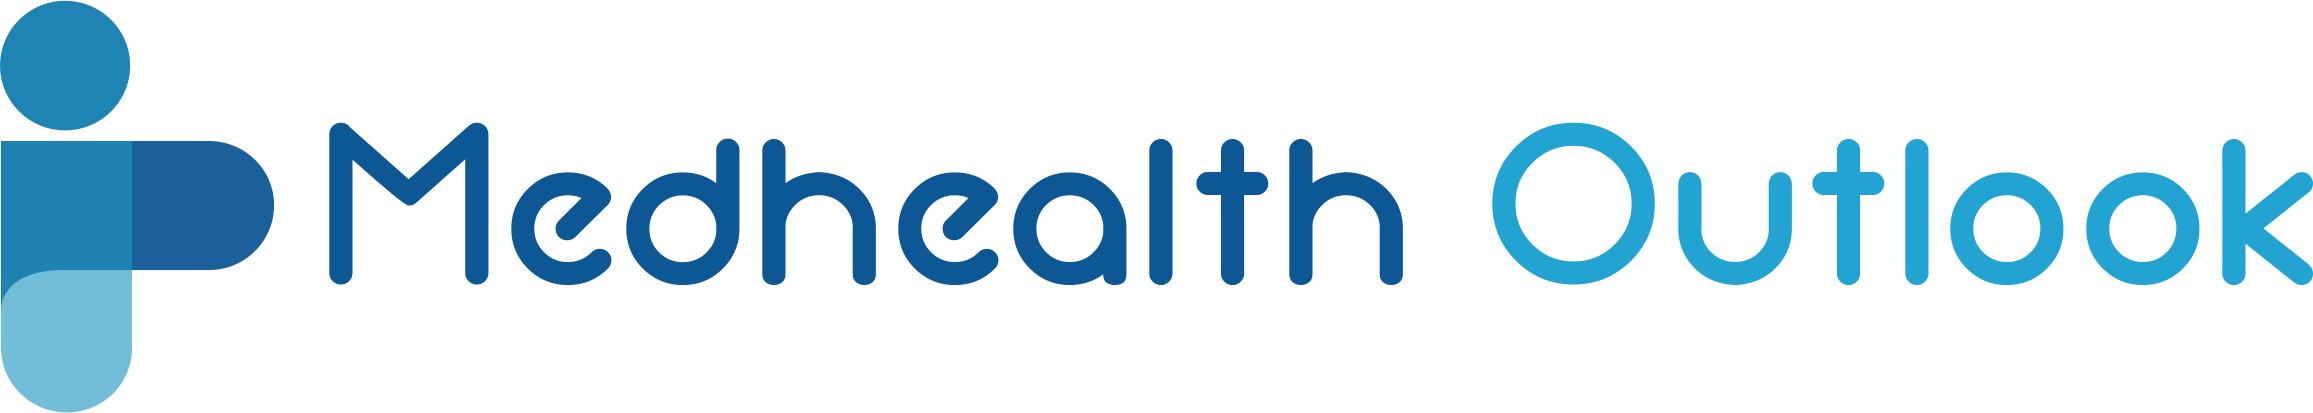 medhealth outlook logo